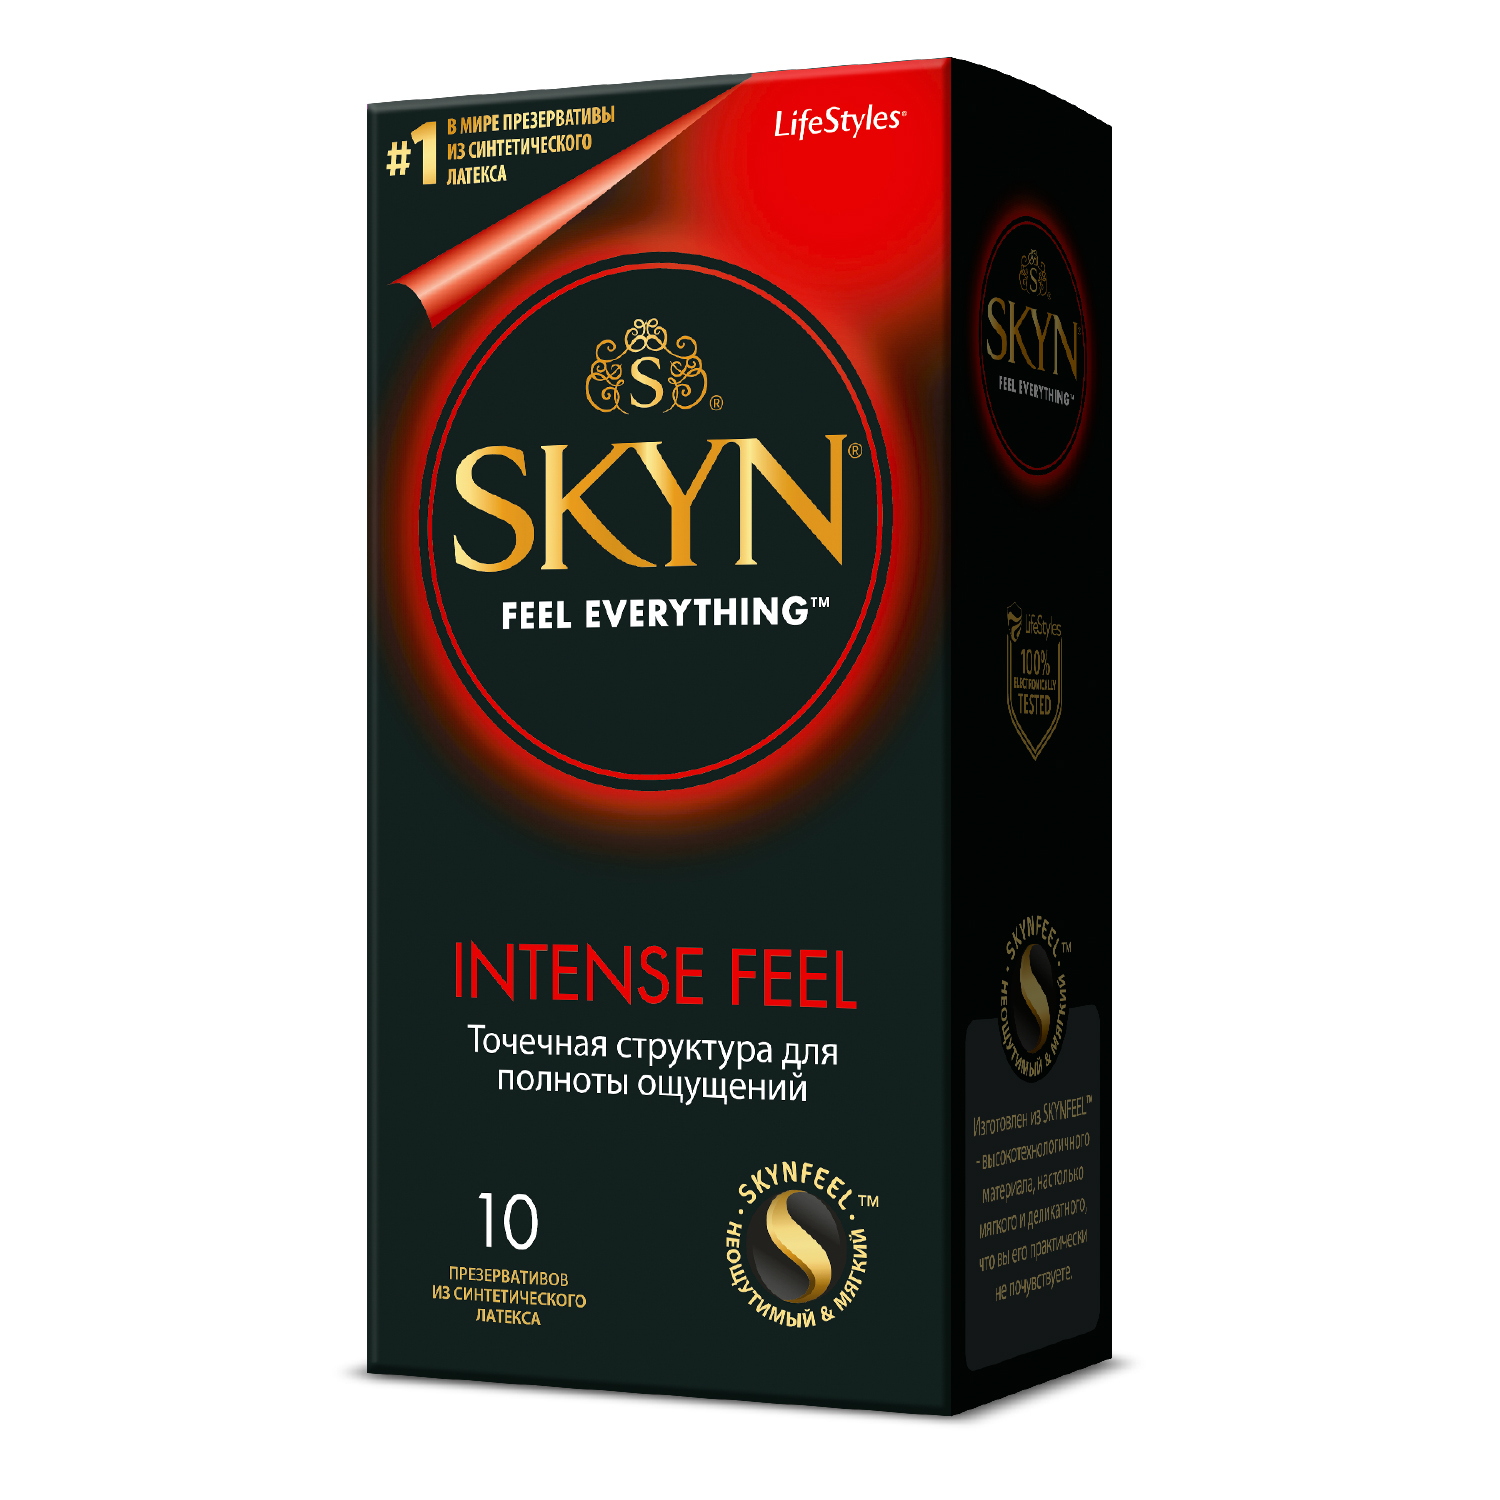 Скин Интенс Фил презервативы из синтетического латекса текстурированные №10 от РИГЛА